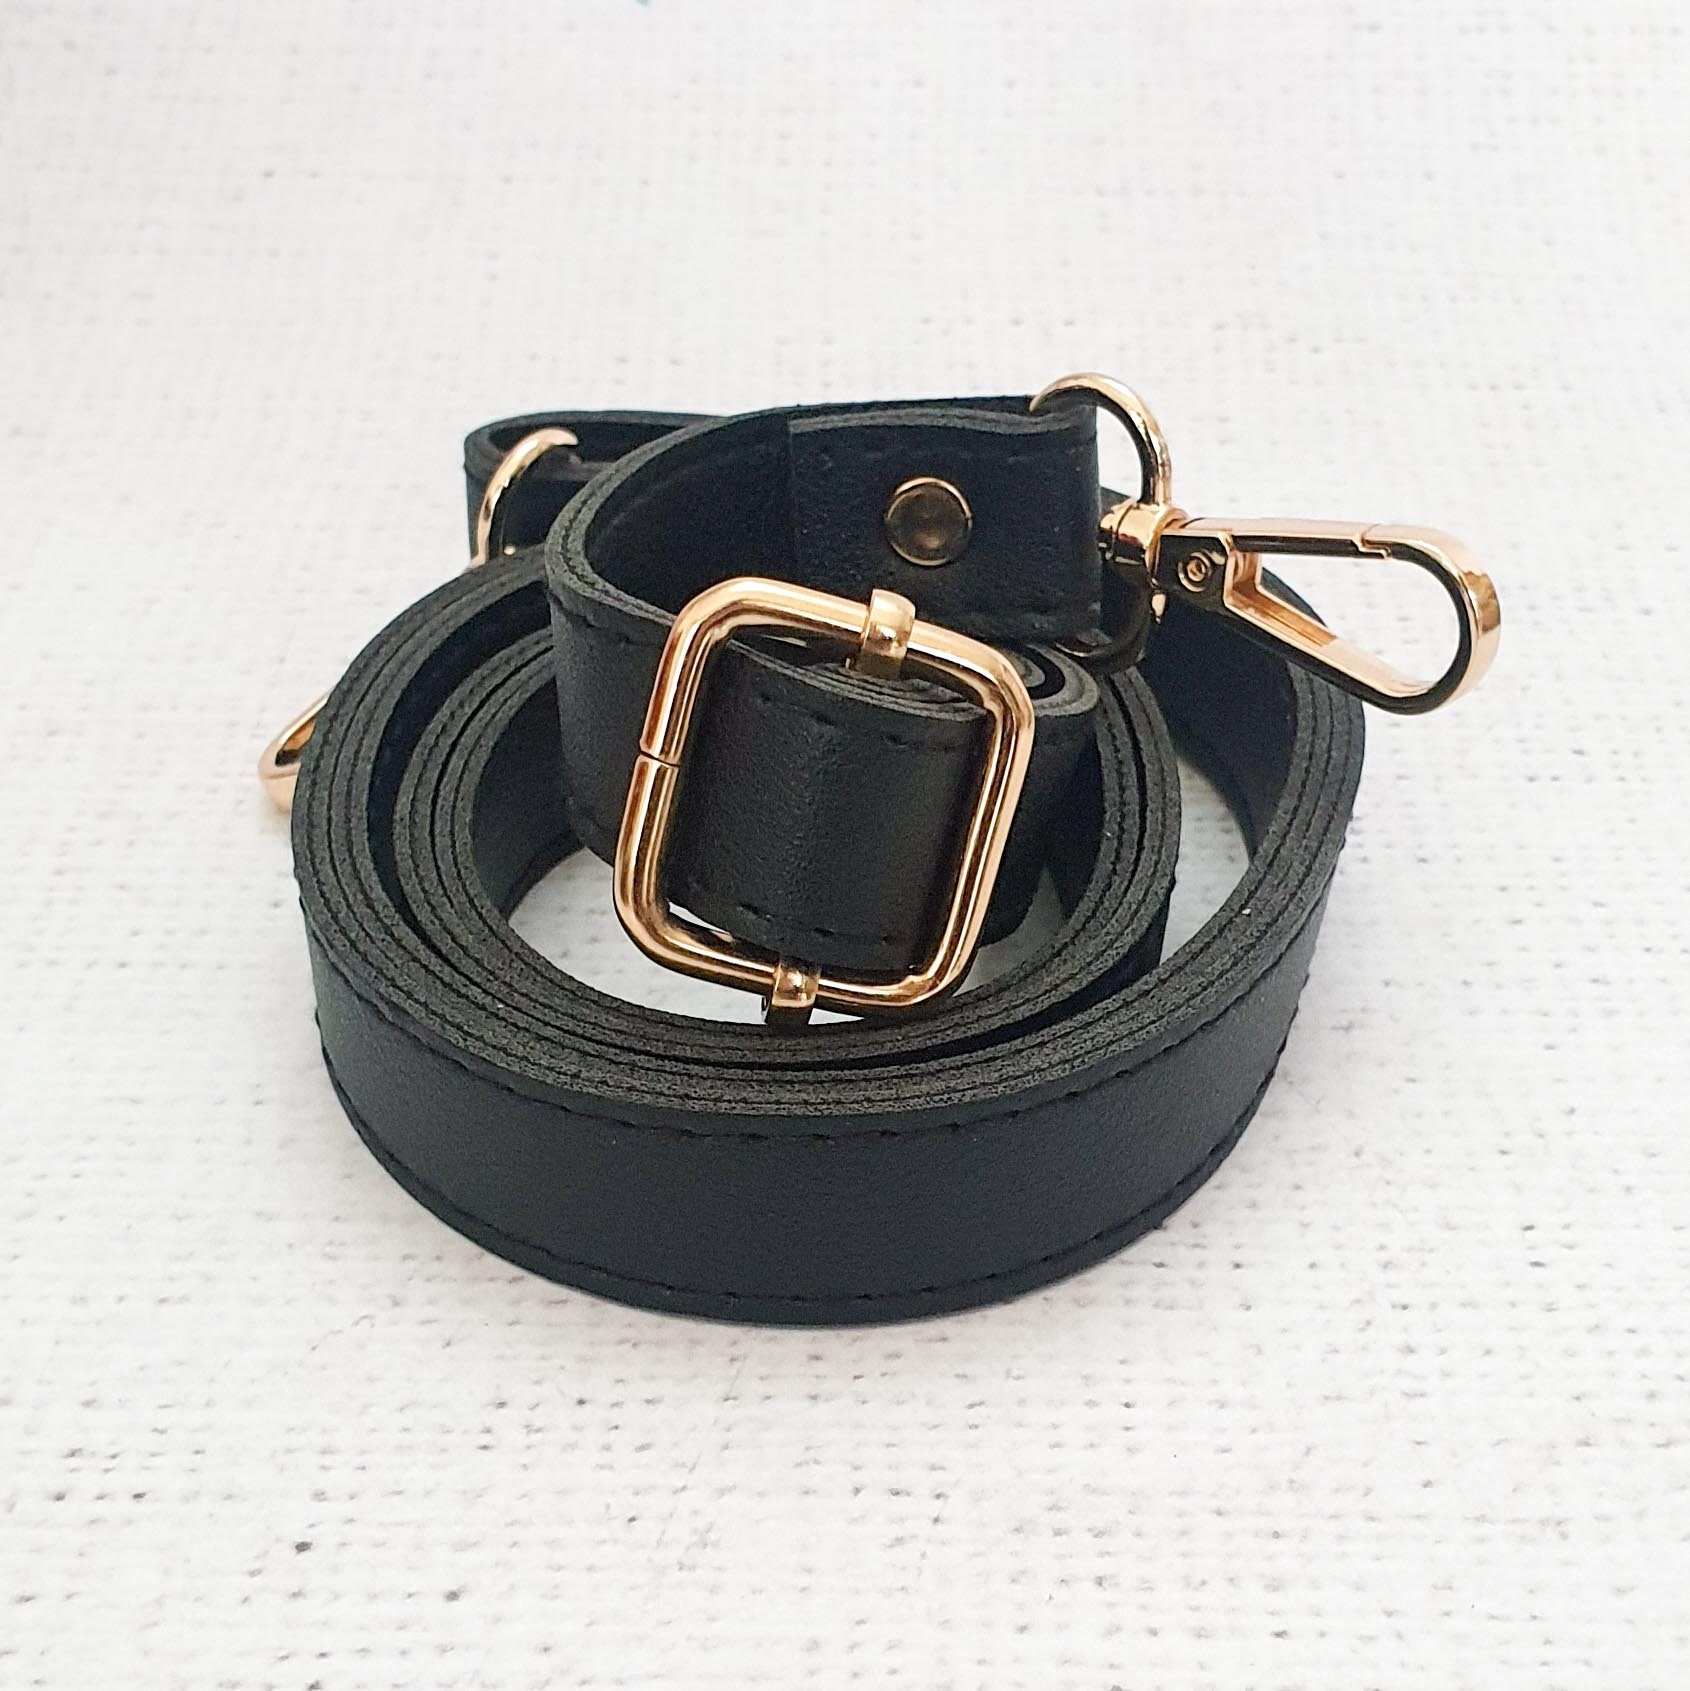 Beige / GOLD Adjustable PU Leather Bag Straps 75cm 138cm -  UK